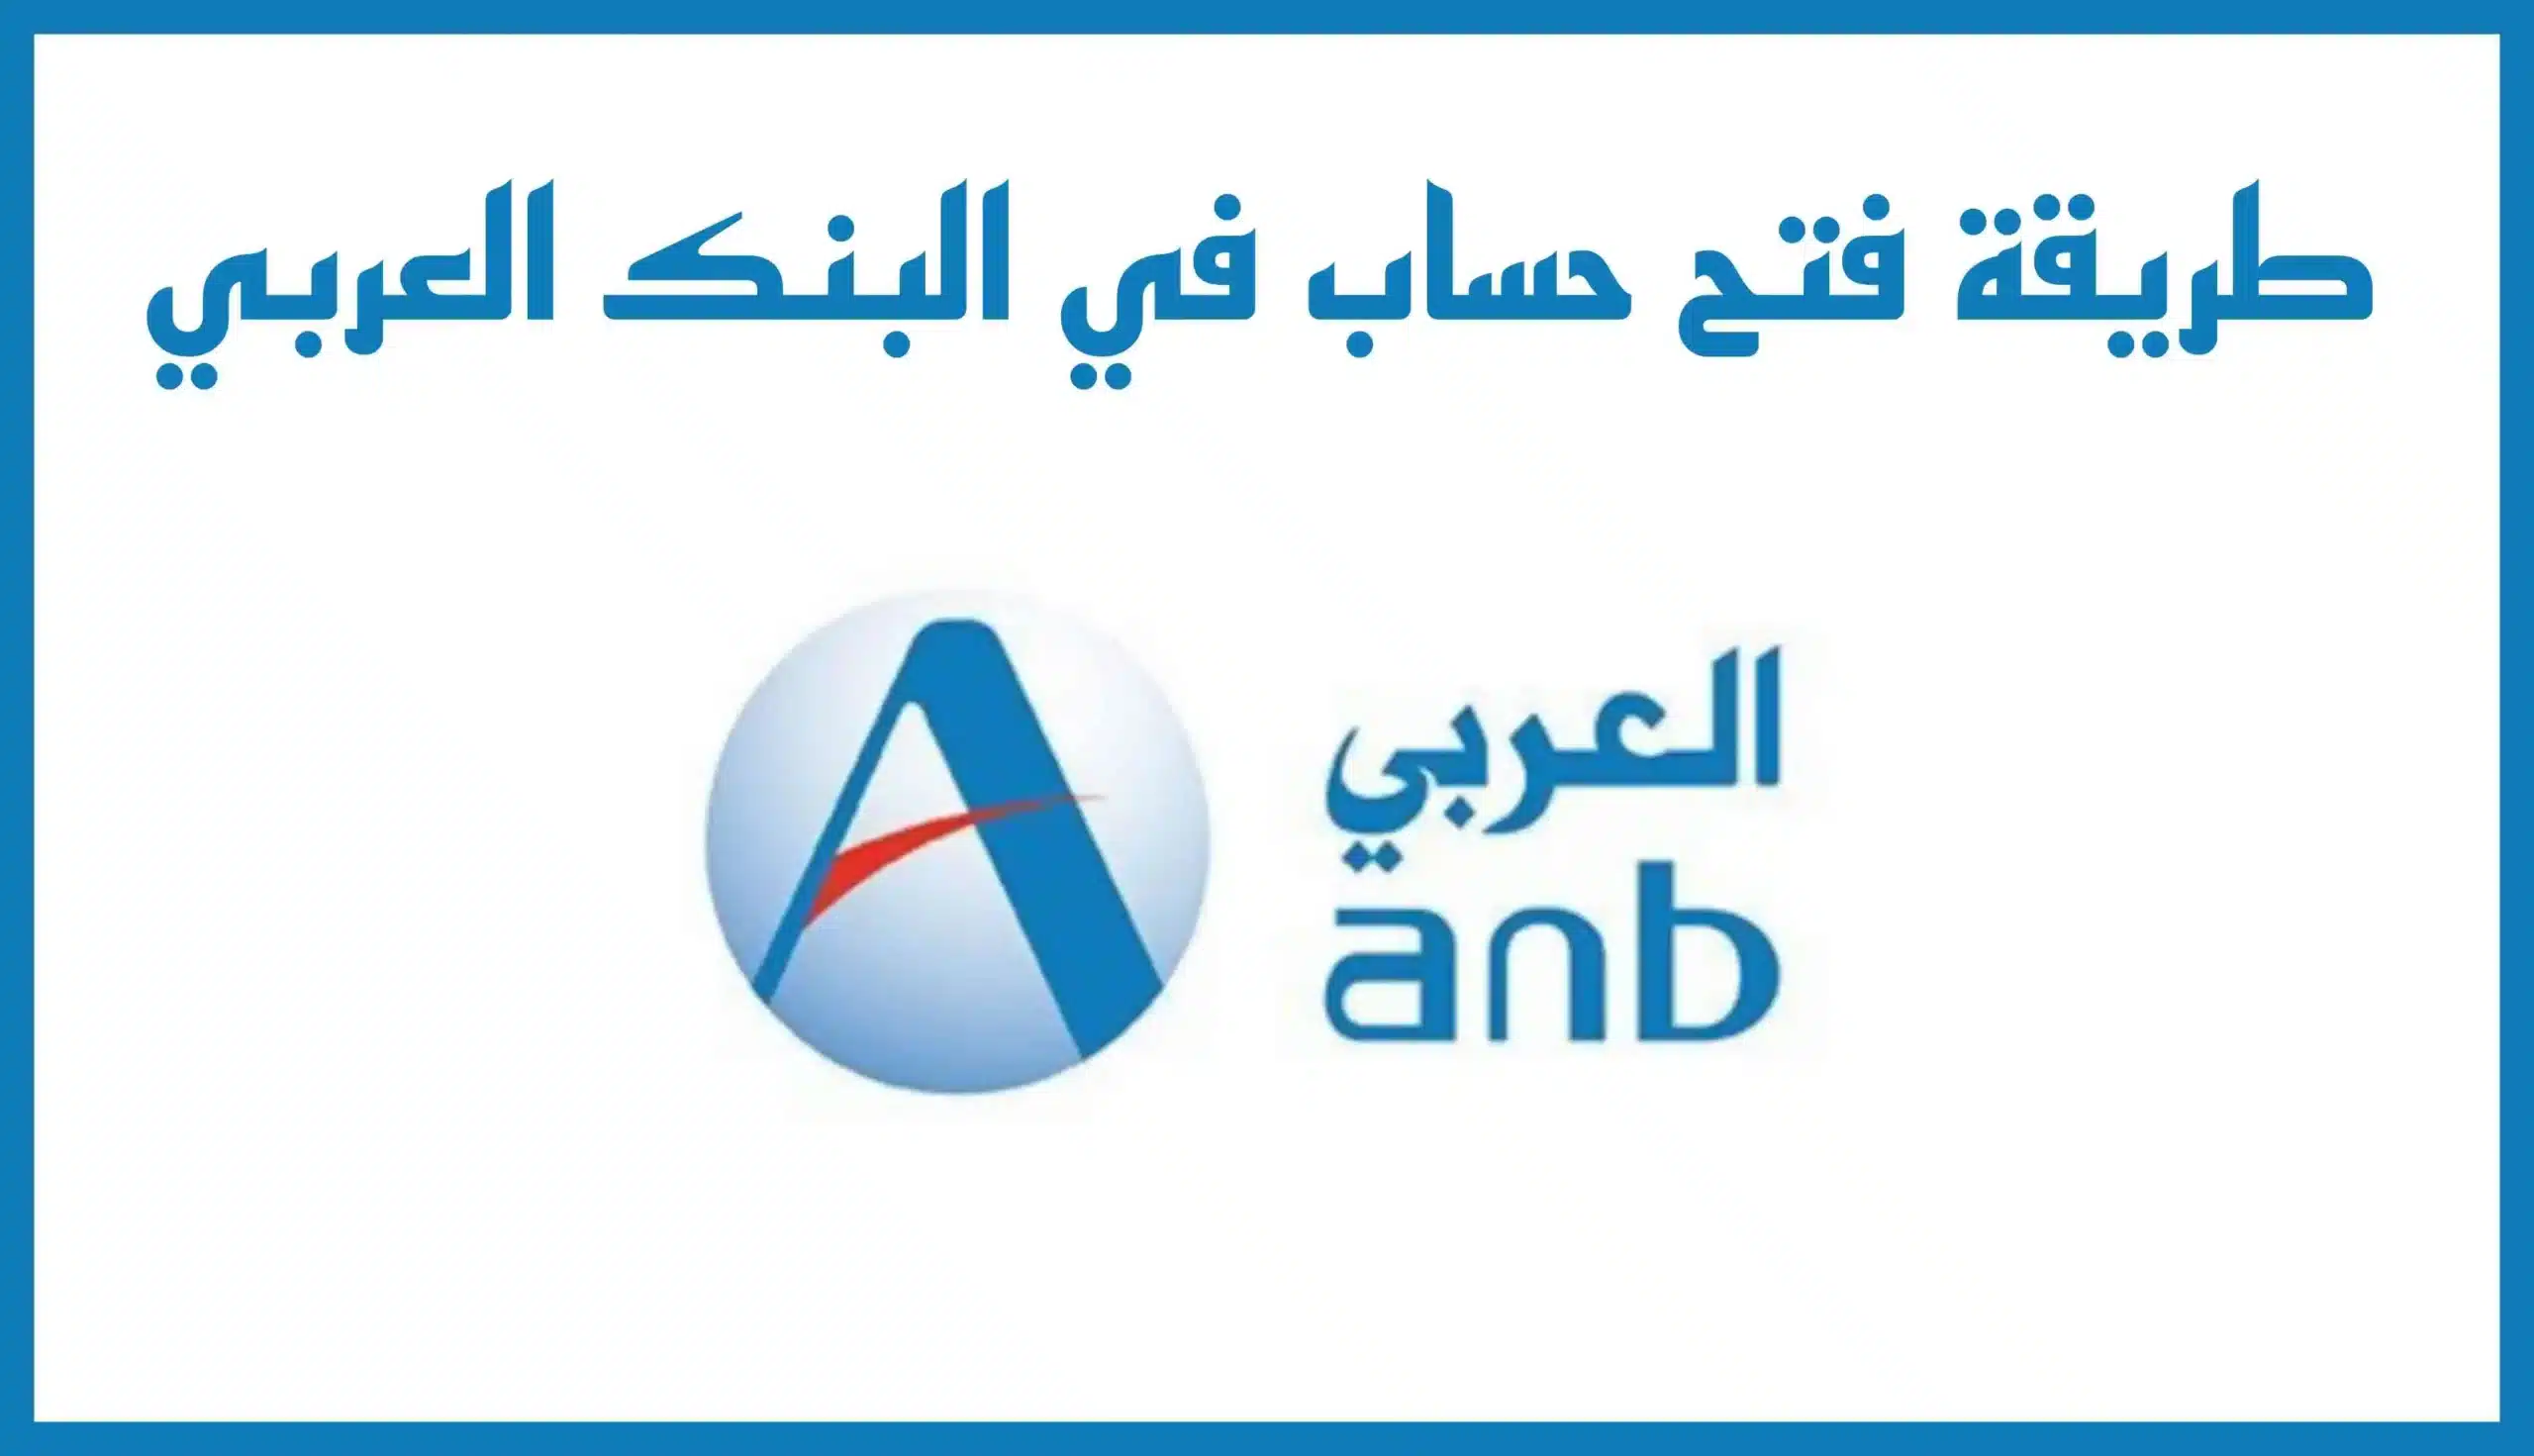 طريقة فتح حساب في البنك العربي من الجوال